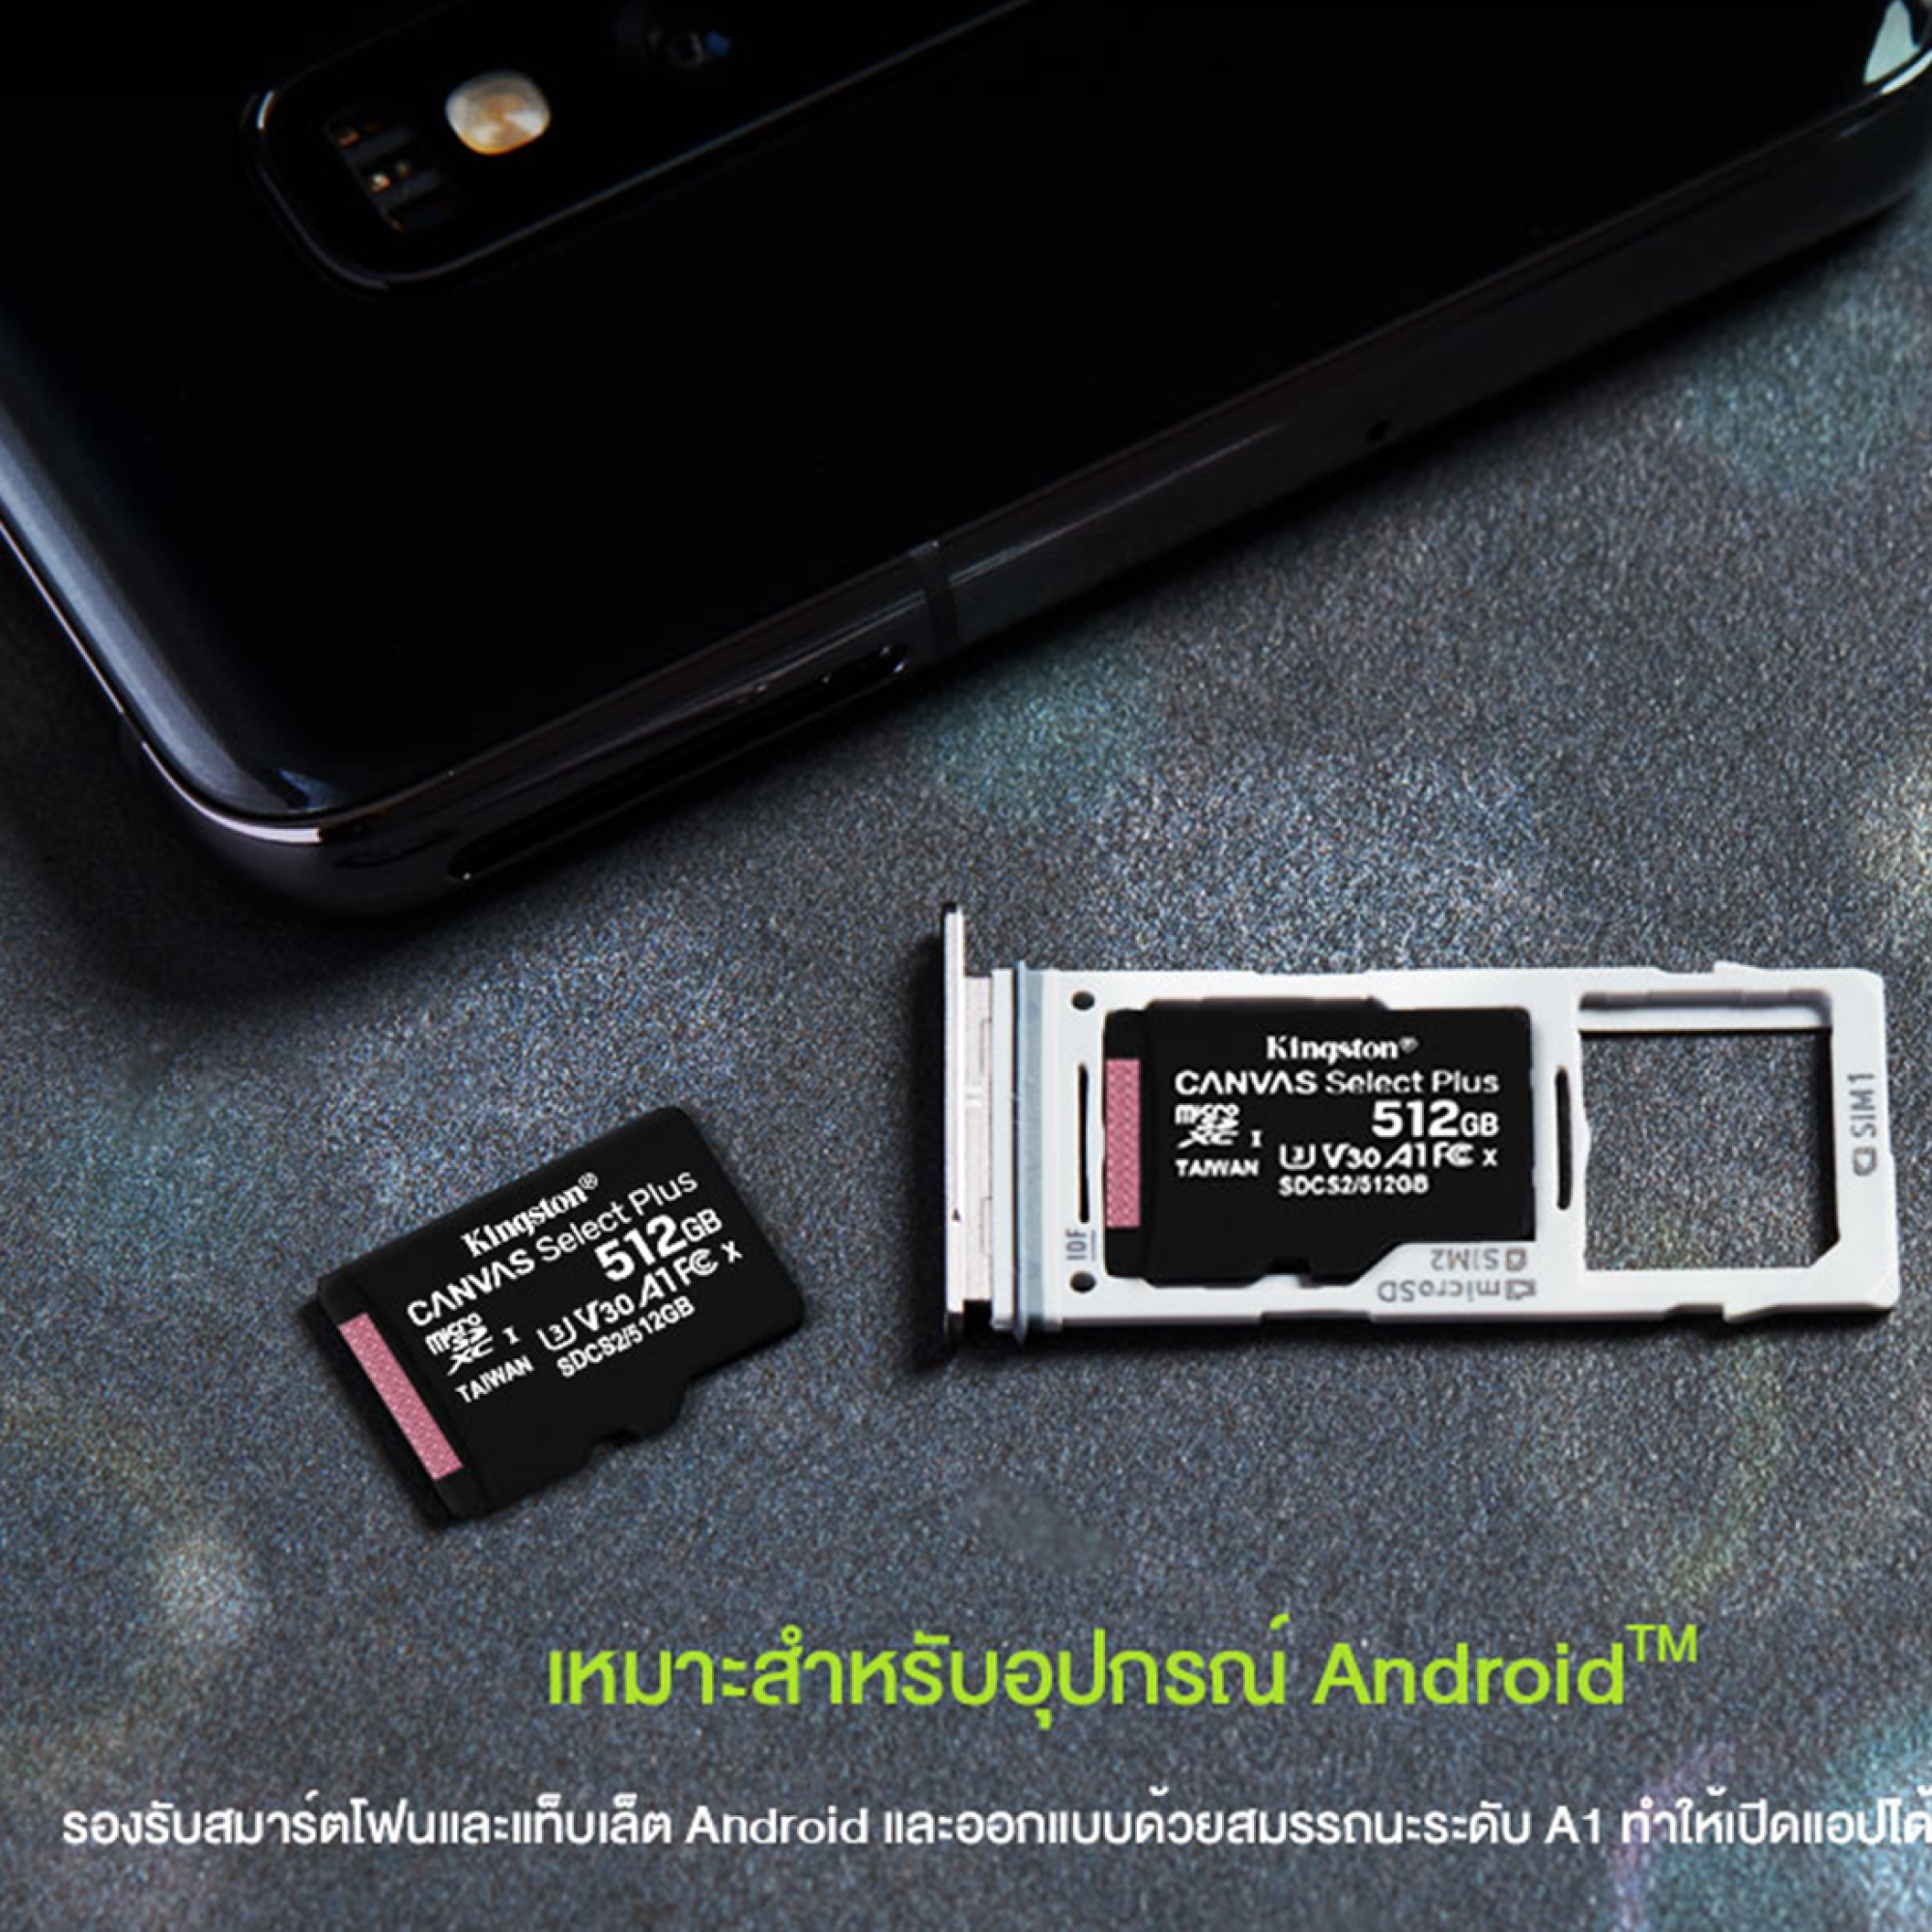 ข้อมูลเพิ่มเติมของ ตัวแทนจำหน่ายคิงส์ตัน (ของแท้) เมมโมรี่การ์ด Kingston microSDHC Classic10 มี16GB 32Gb 64GB